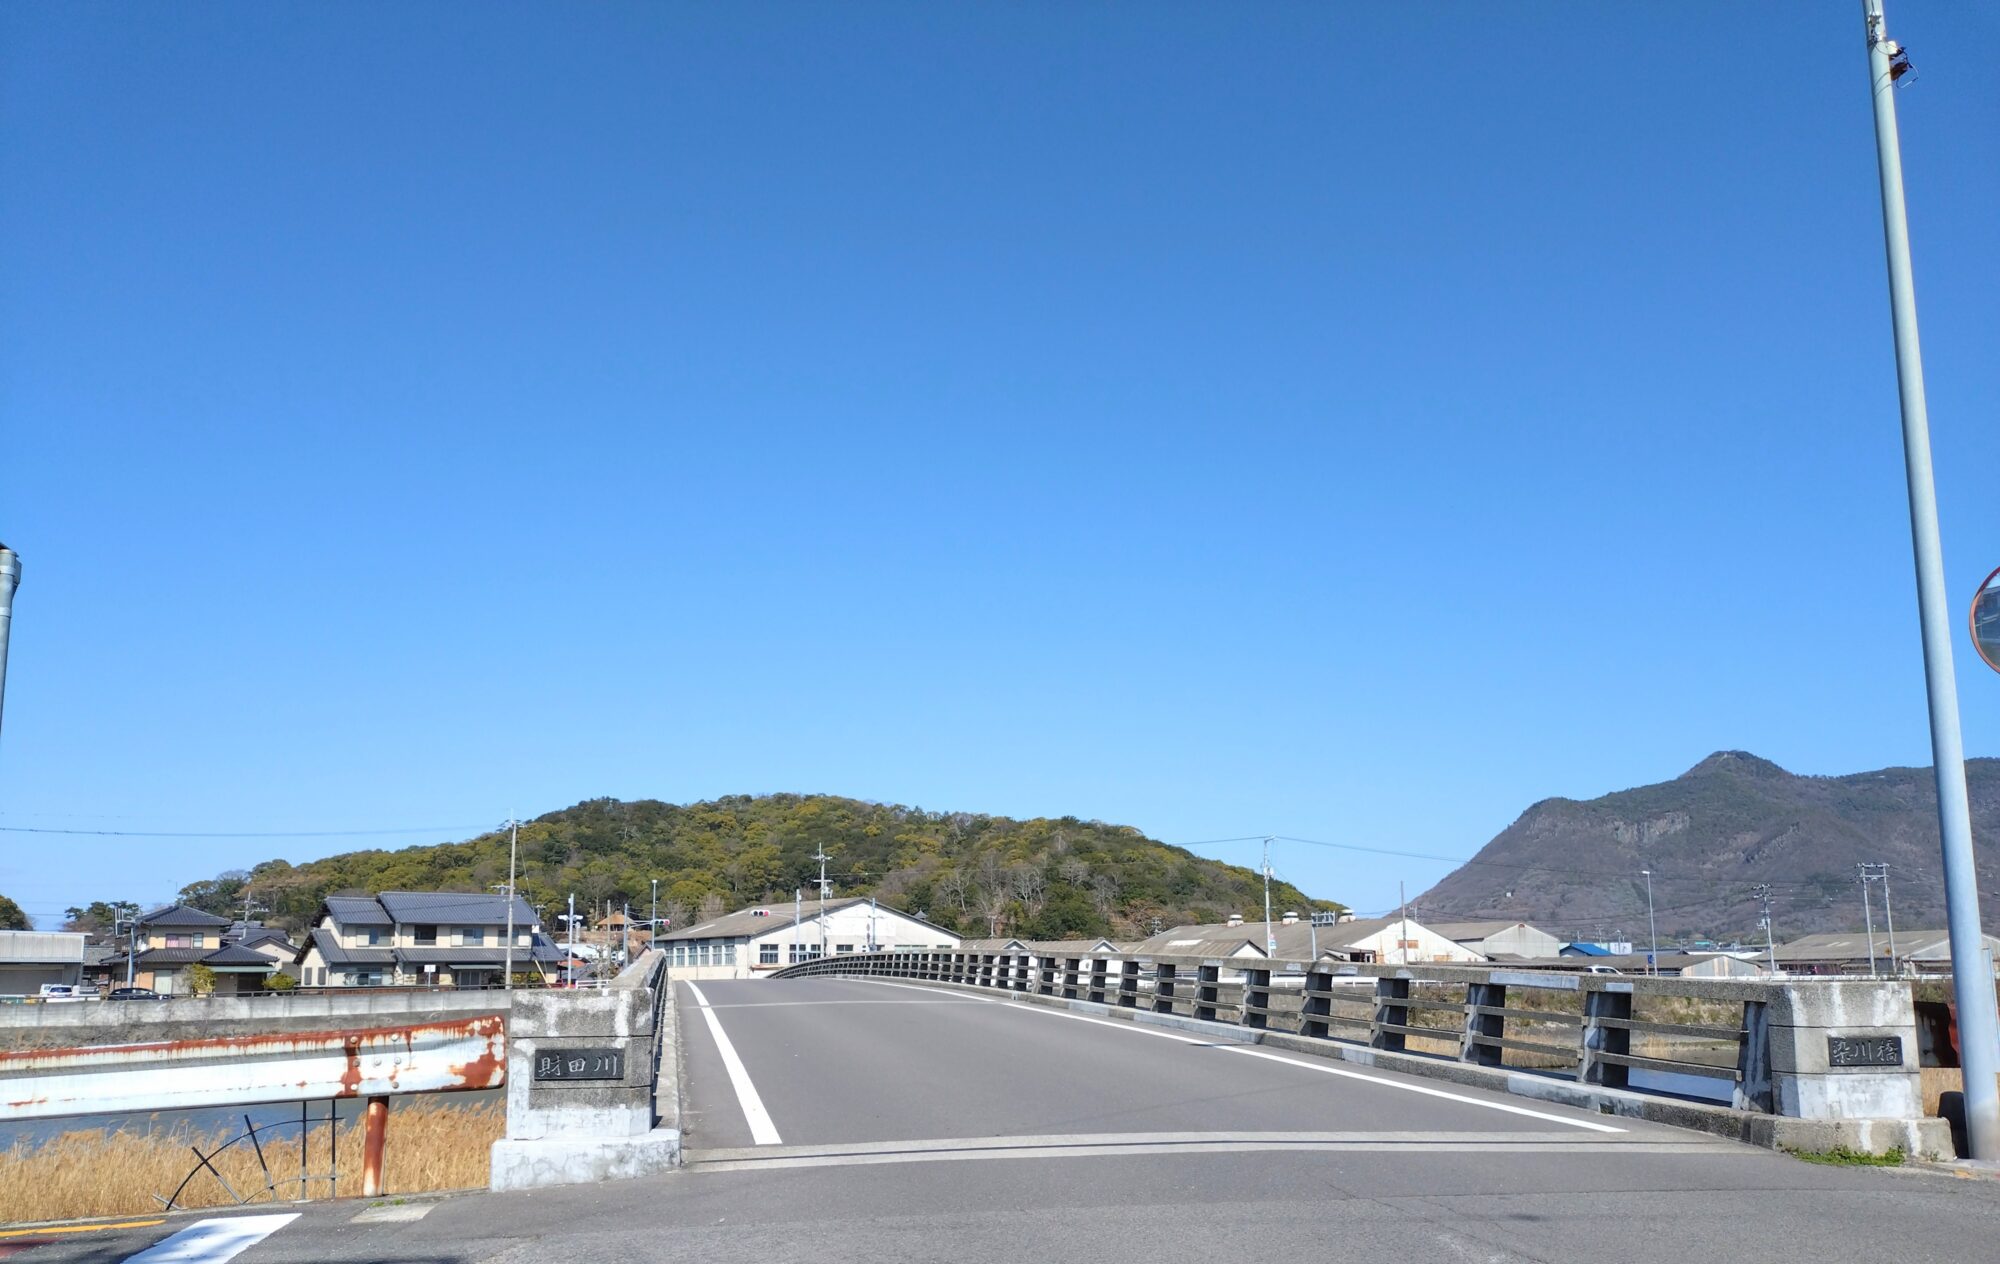 染川橋